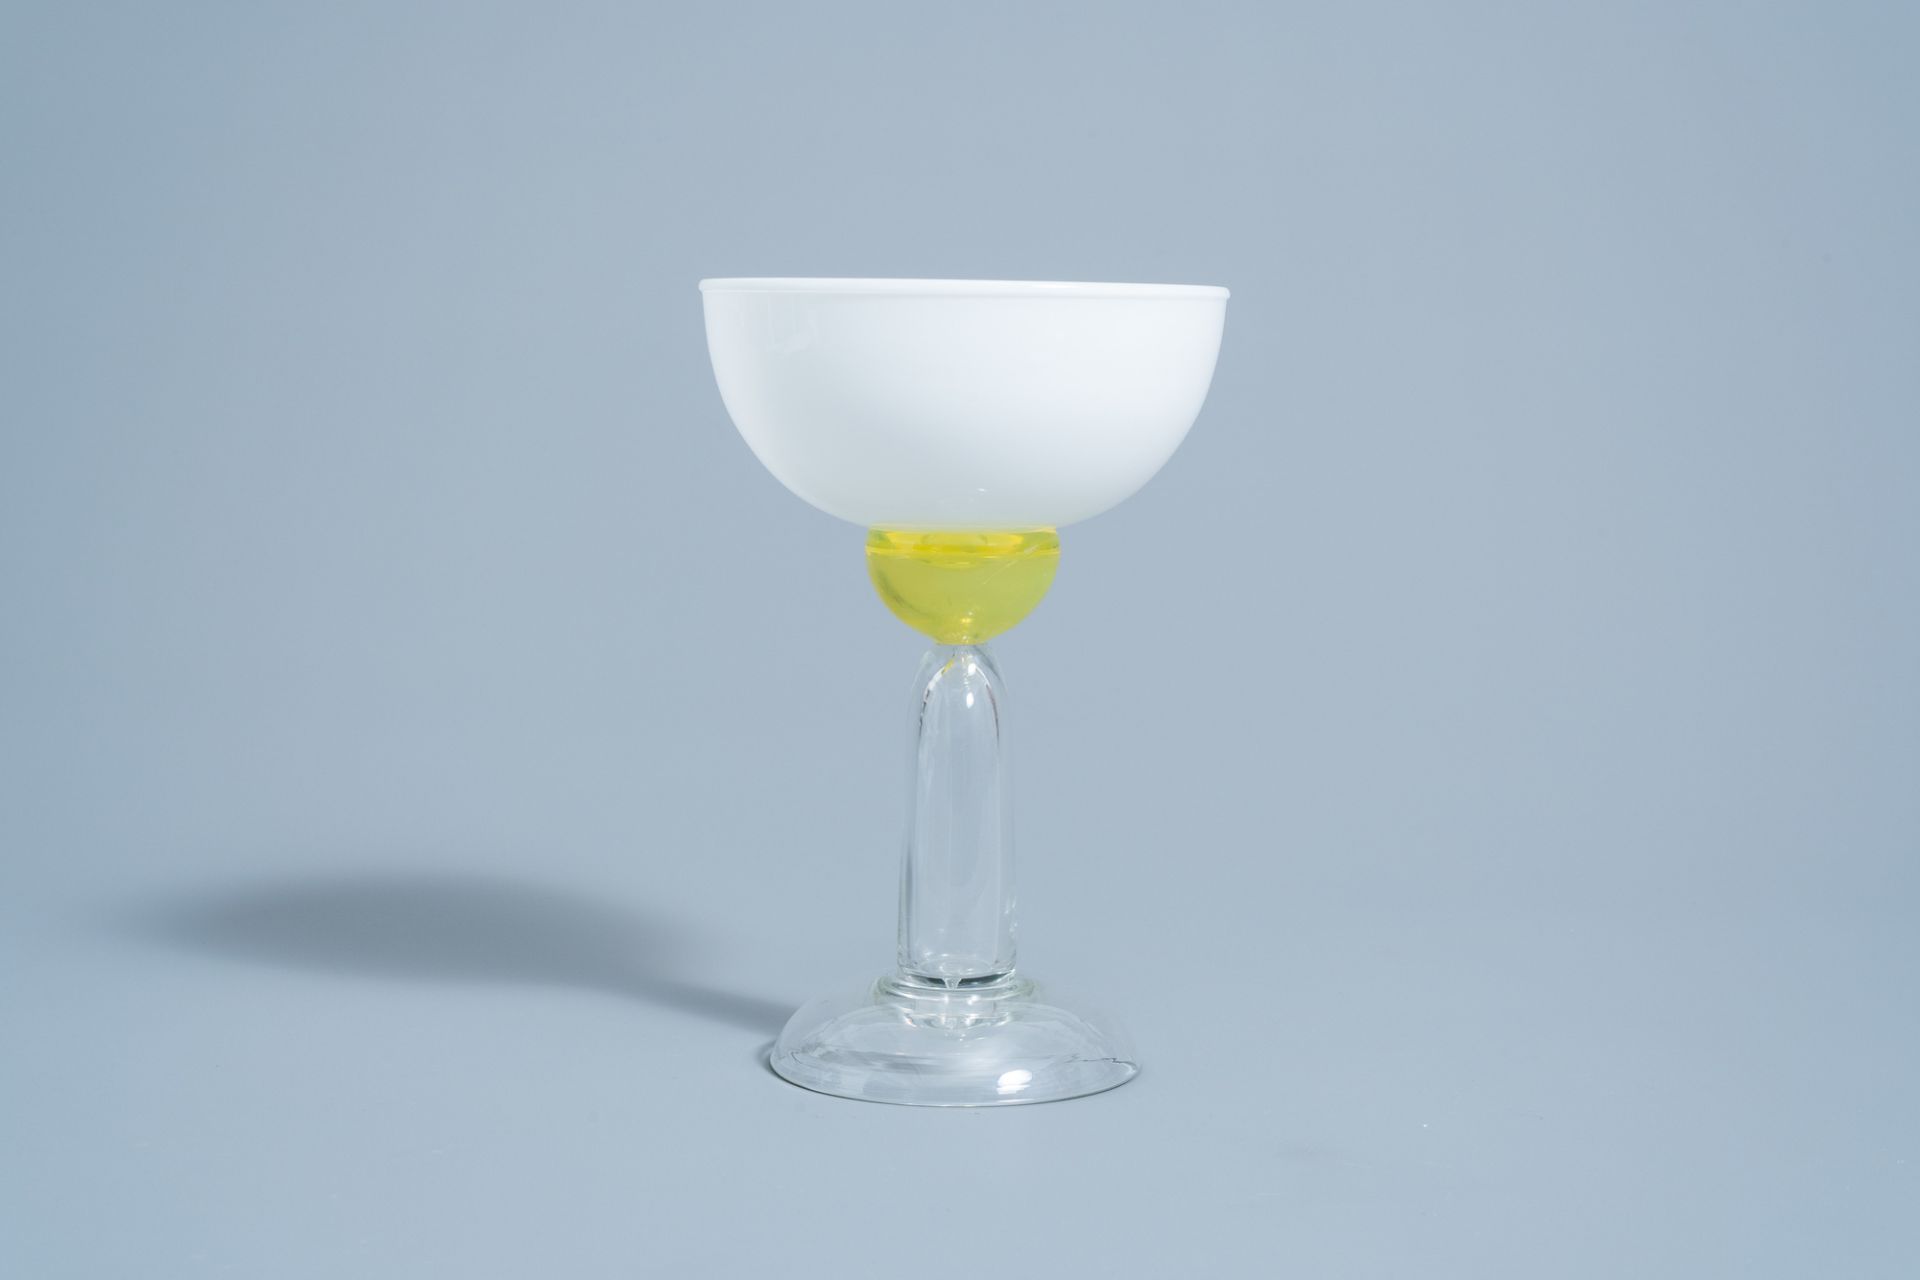 Marco Zanini (1954): 'Beltegeuse' Murano glass glass for Memphis Milano by Toso Vetri d'Arte, [1983] - Image 4 of 9